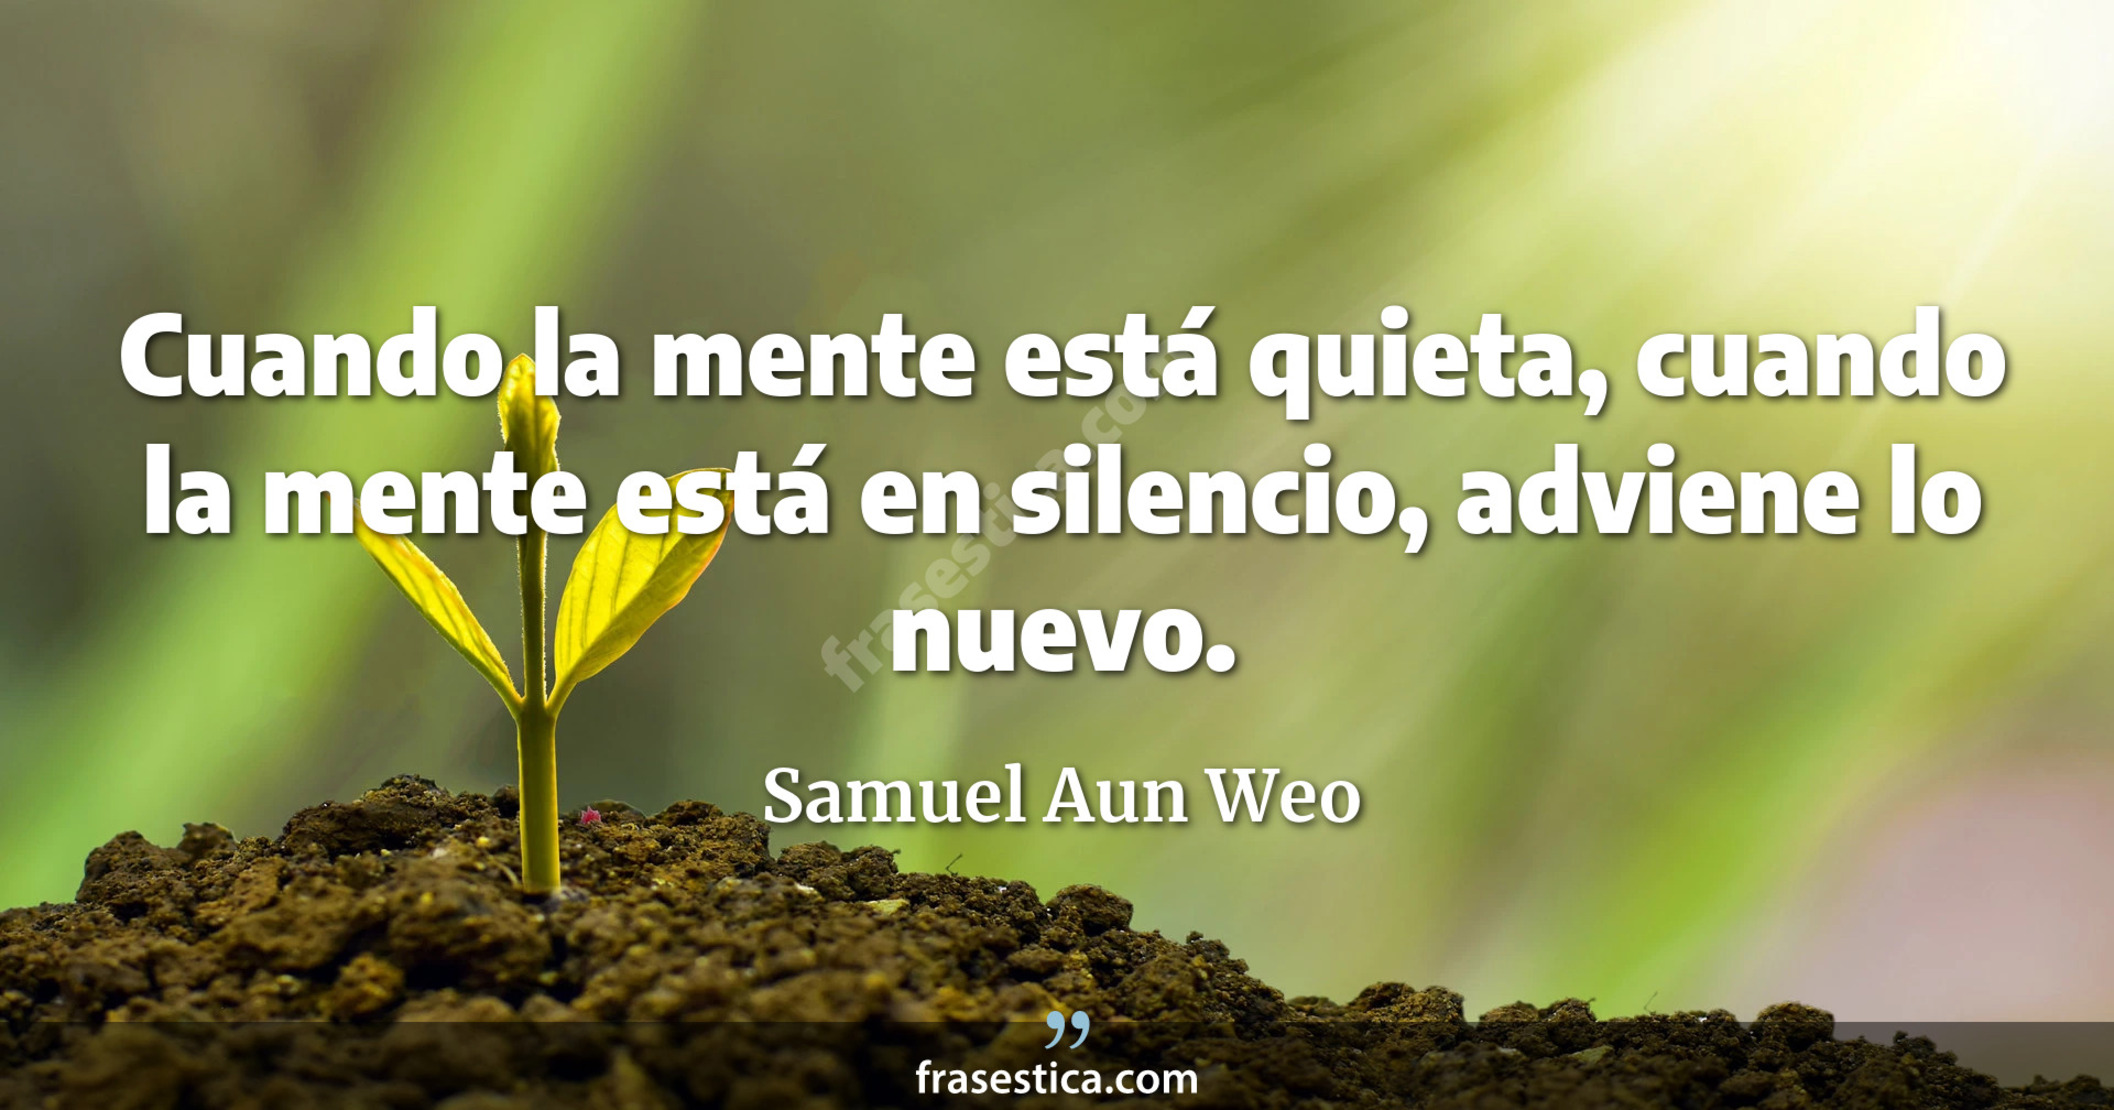 Cuando la mente está quieta, cuando la mente está en silencio, adviene lo nuevo. - Samuel Aun Weo